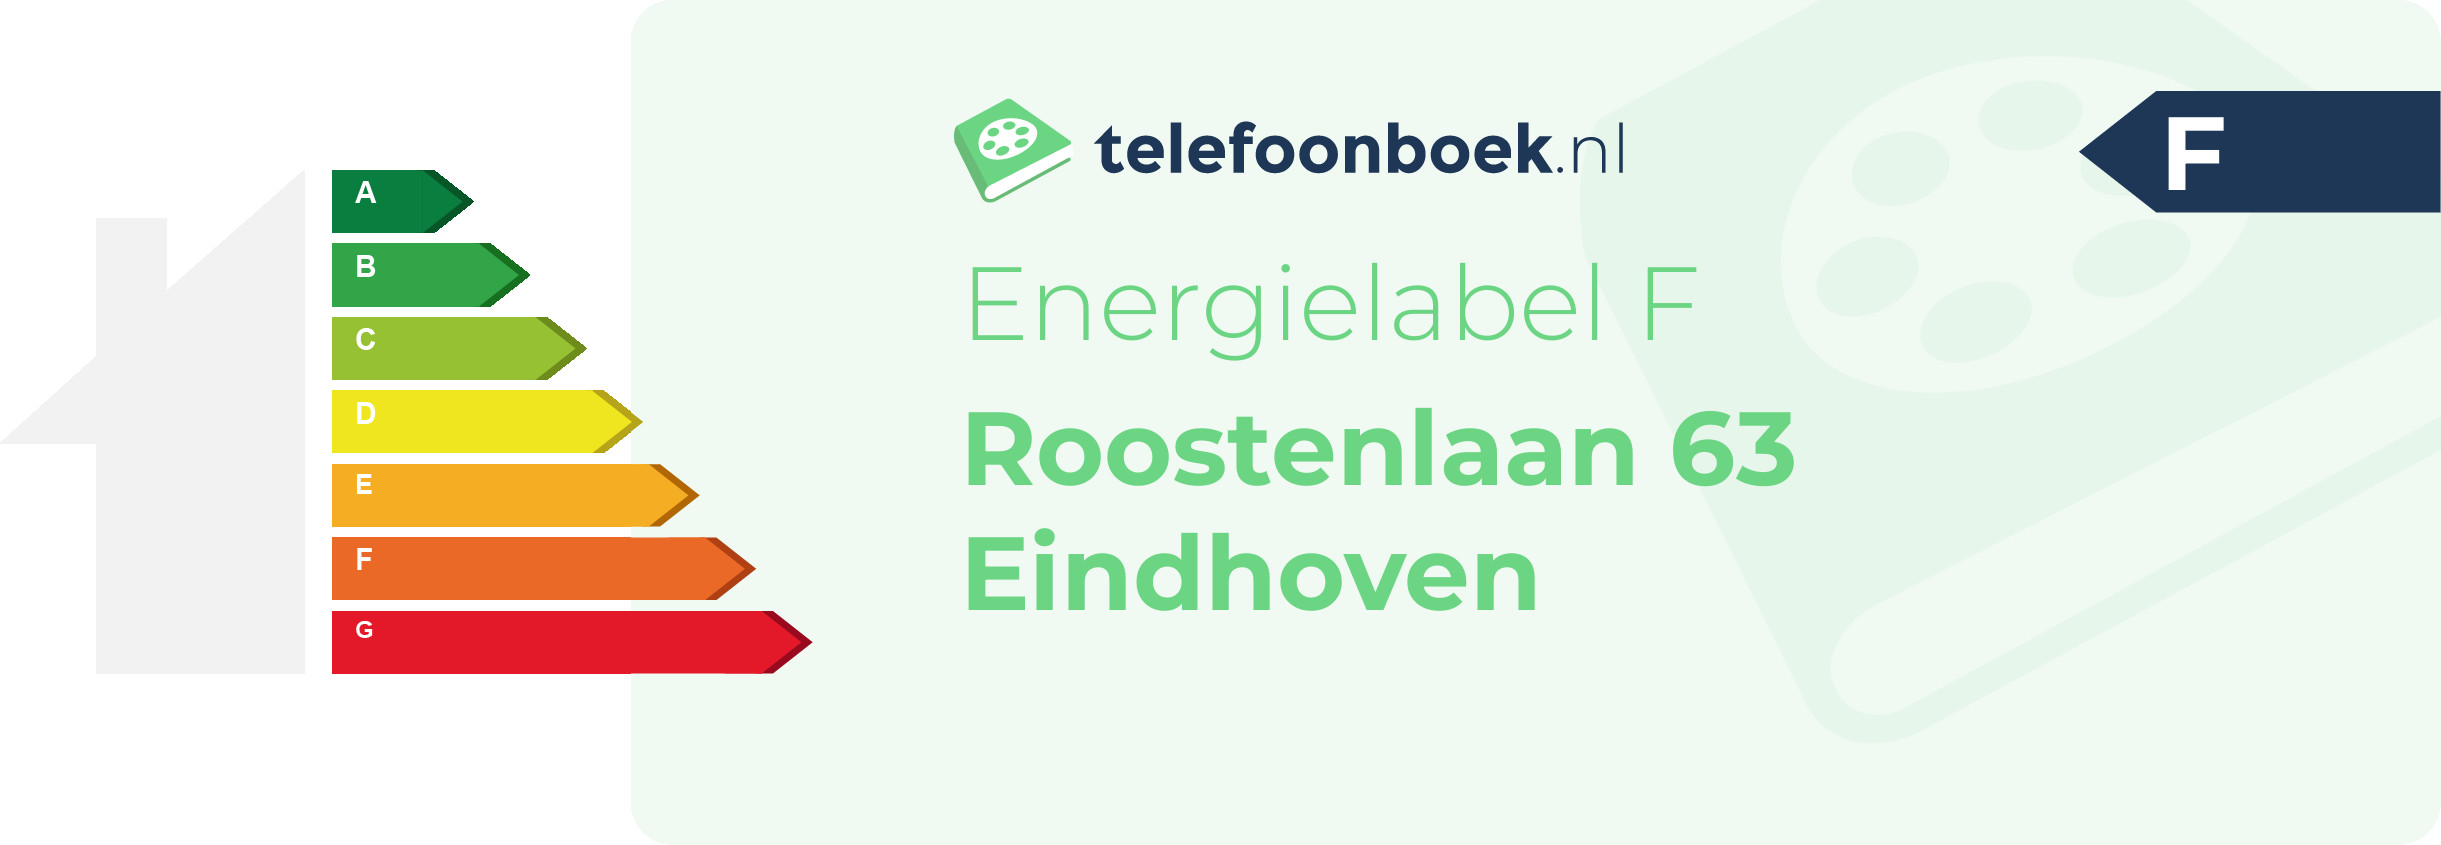 Energielabel Roostenlaan 63 Eindhoven